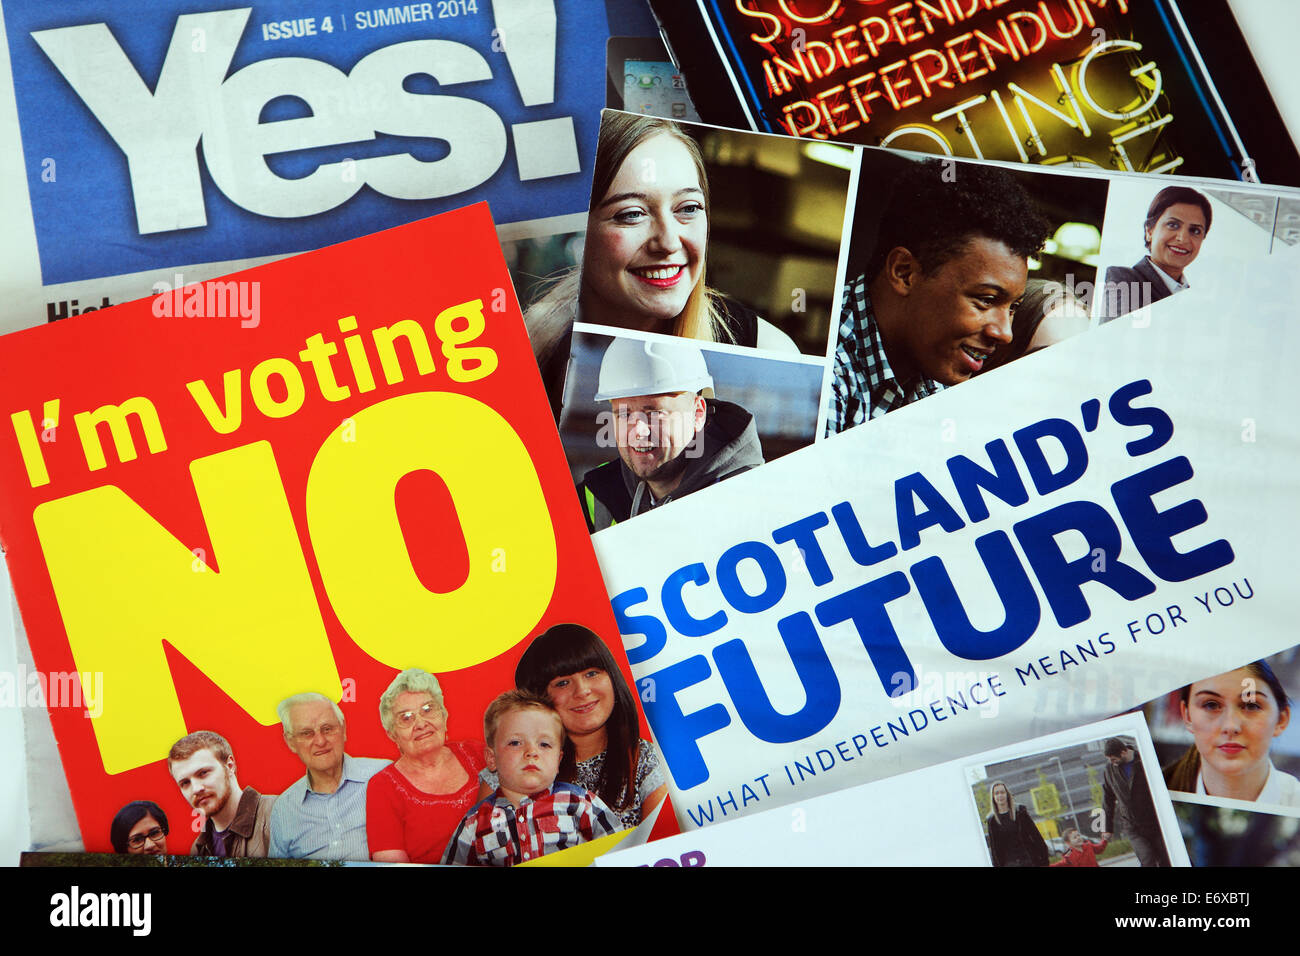 Septembre 2014 Référendum écossais Banque D'Images